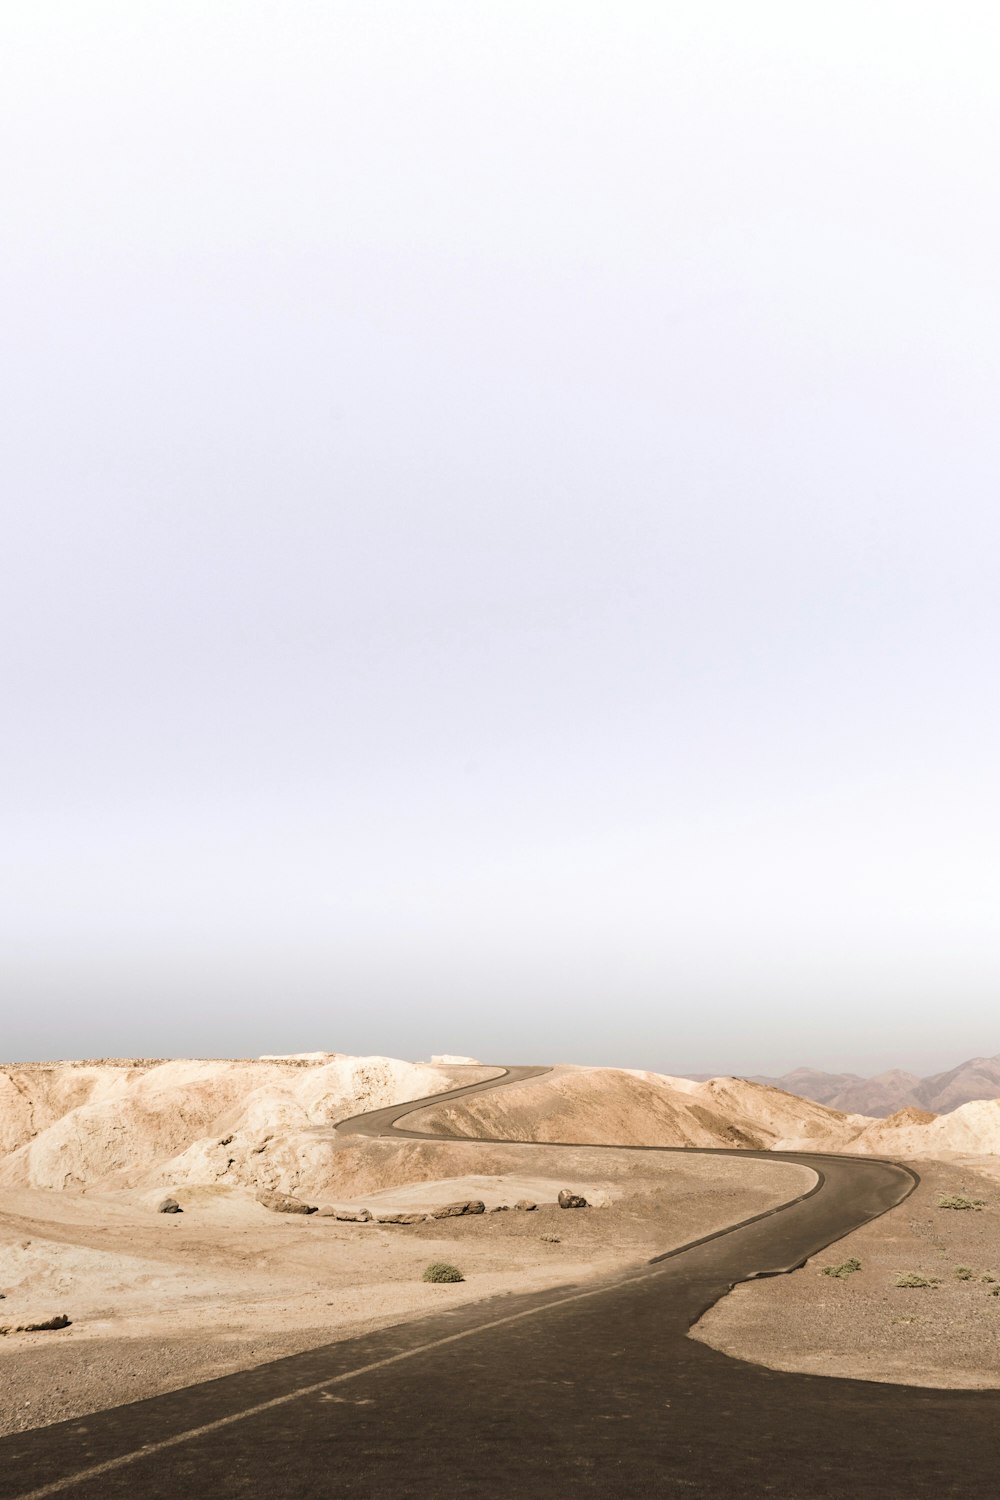 Carretera de asfalto gris en el desierto durante el día